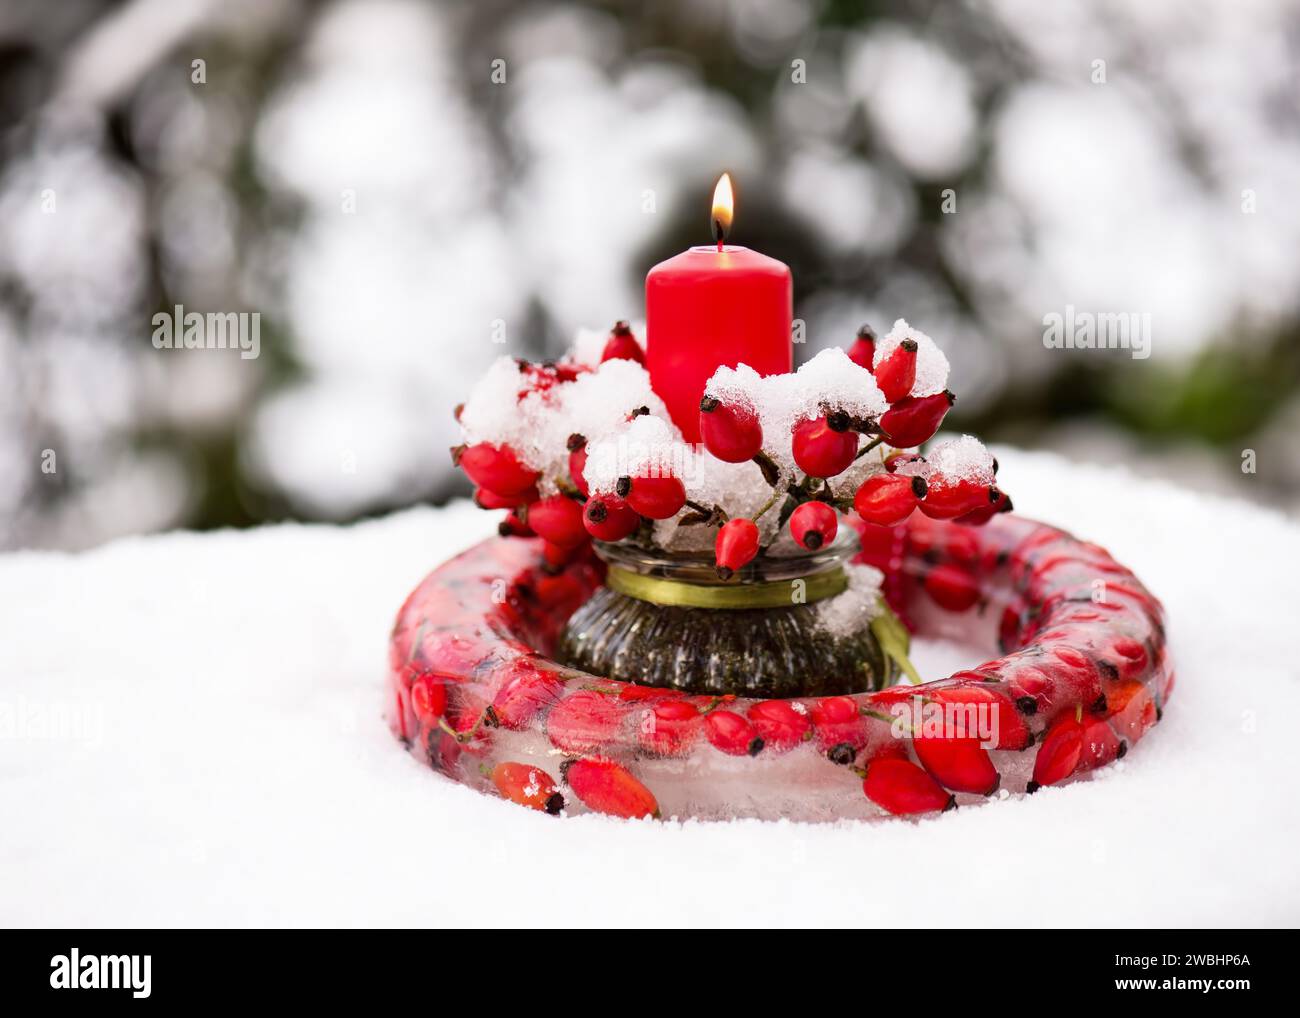 Hermoso arreglo florístico con ramas de rosa mosqueta, guirnalda congelada hecha de hielo, bayas de rosa cadera roja y vela roja ardiente en la nieve. Foto de stock